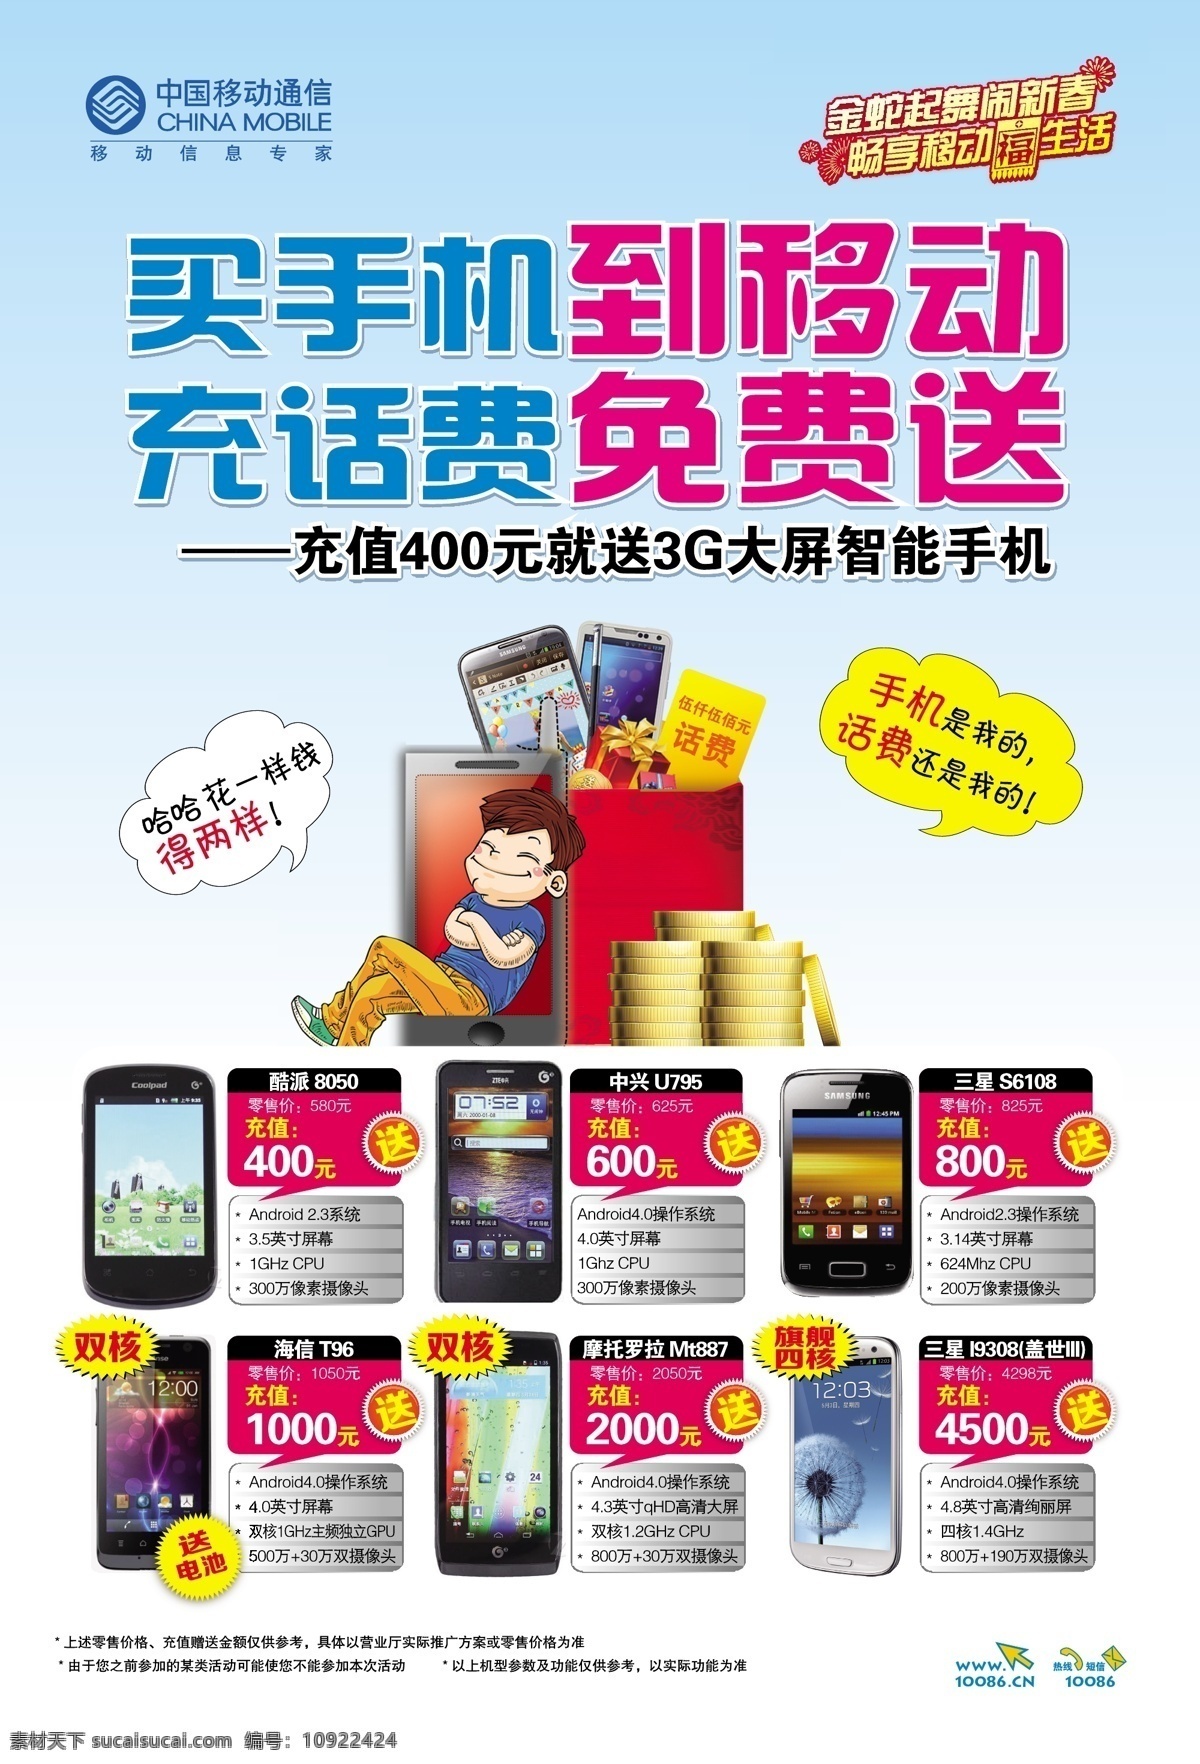 海信 卡通人物 摩托罗拉 三星 移动通信标志 中兴 中国移动通信 3g 手机 海报 酷派3g手机 矢量 其他海报设计